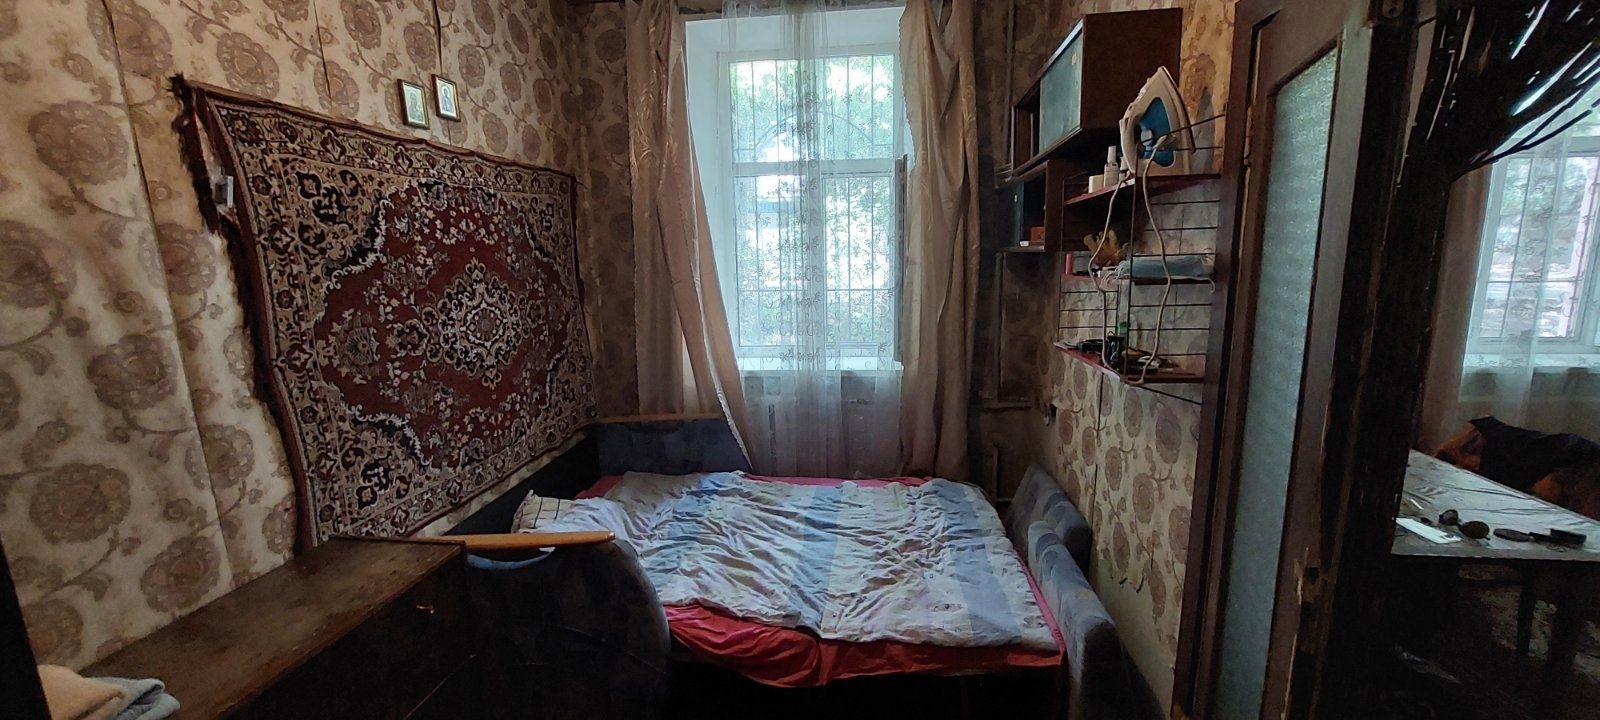 Продам квартиру 2х комнатную на Аржанова,пр.Слобожанский,Новоселовская